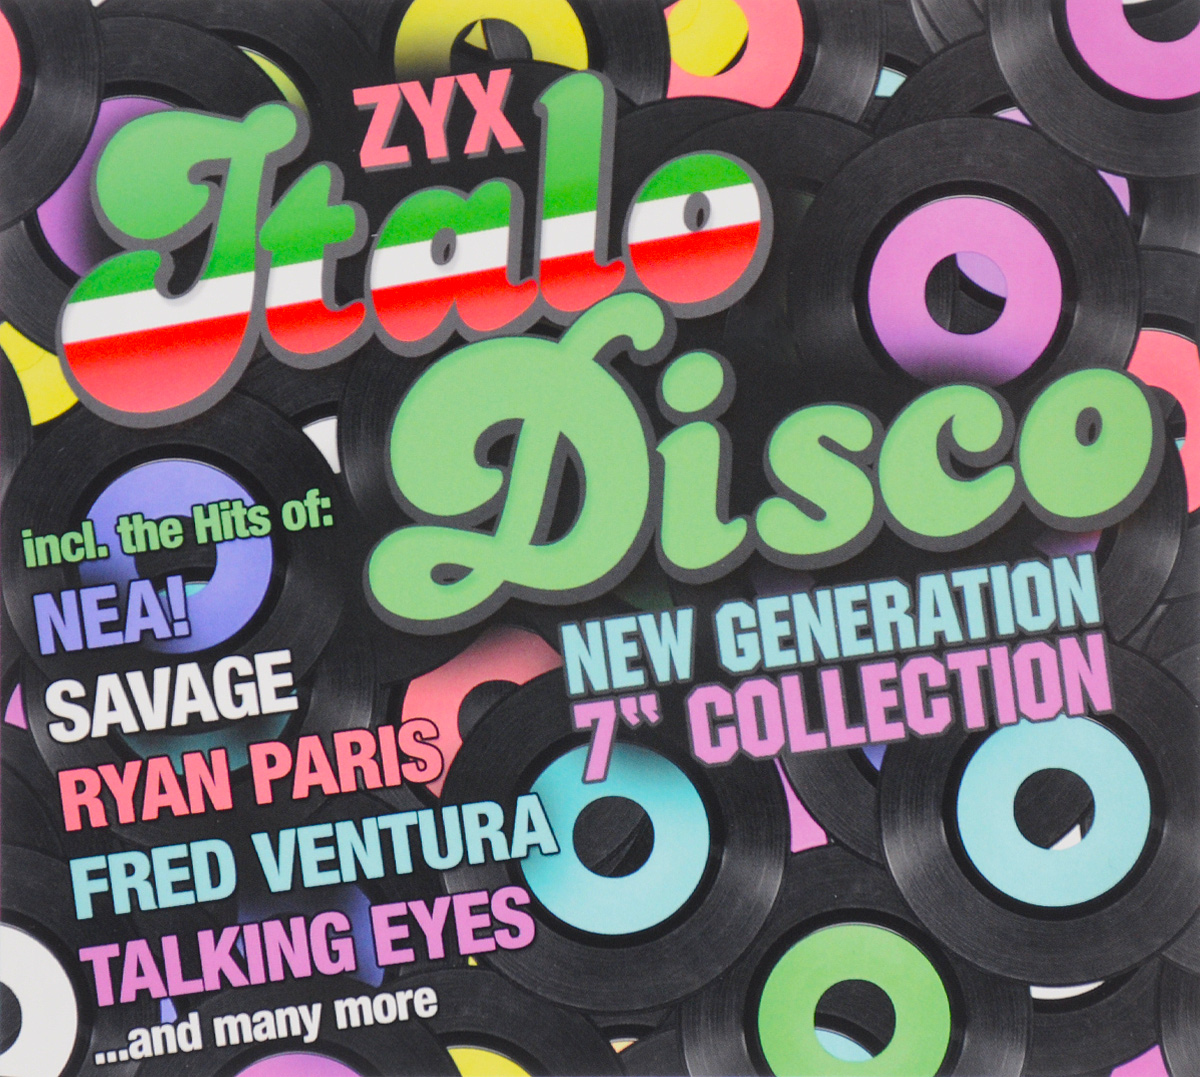 Italo Disco New Generation. Italo Disco New Generation CD Cover. ZYX Italo Disco New Generation Vol 22 cd2. Лого Disco New Generation. New disco hits